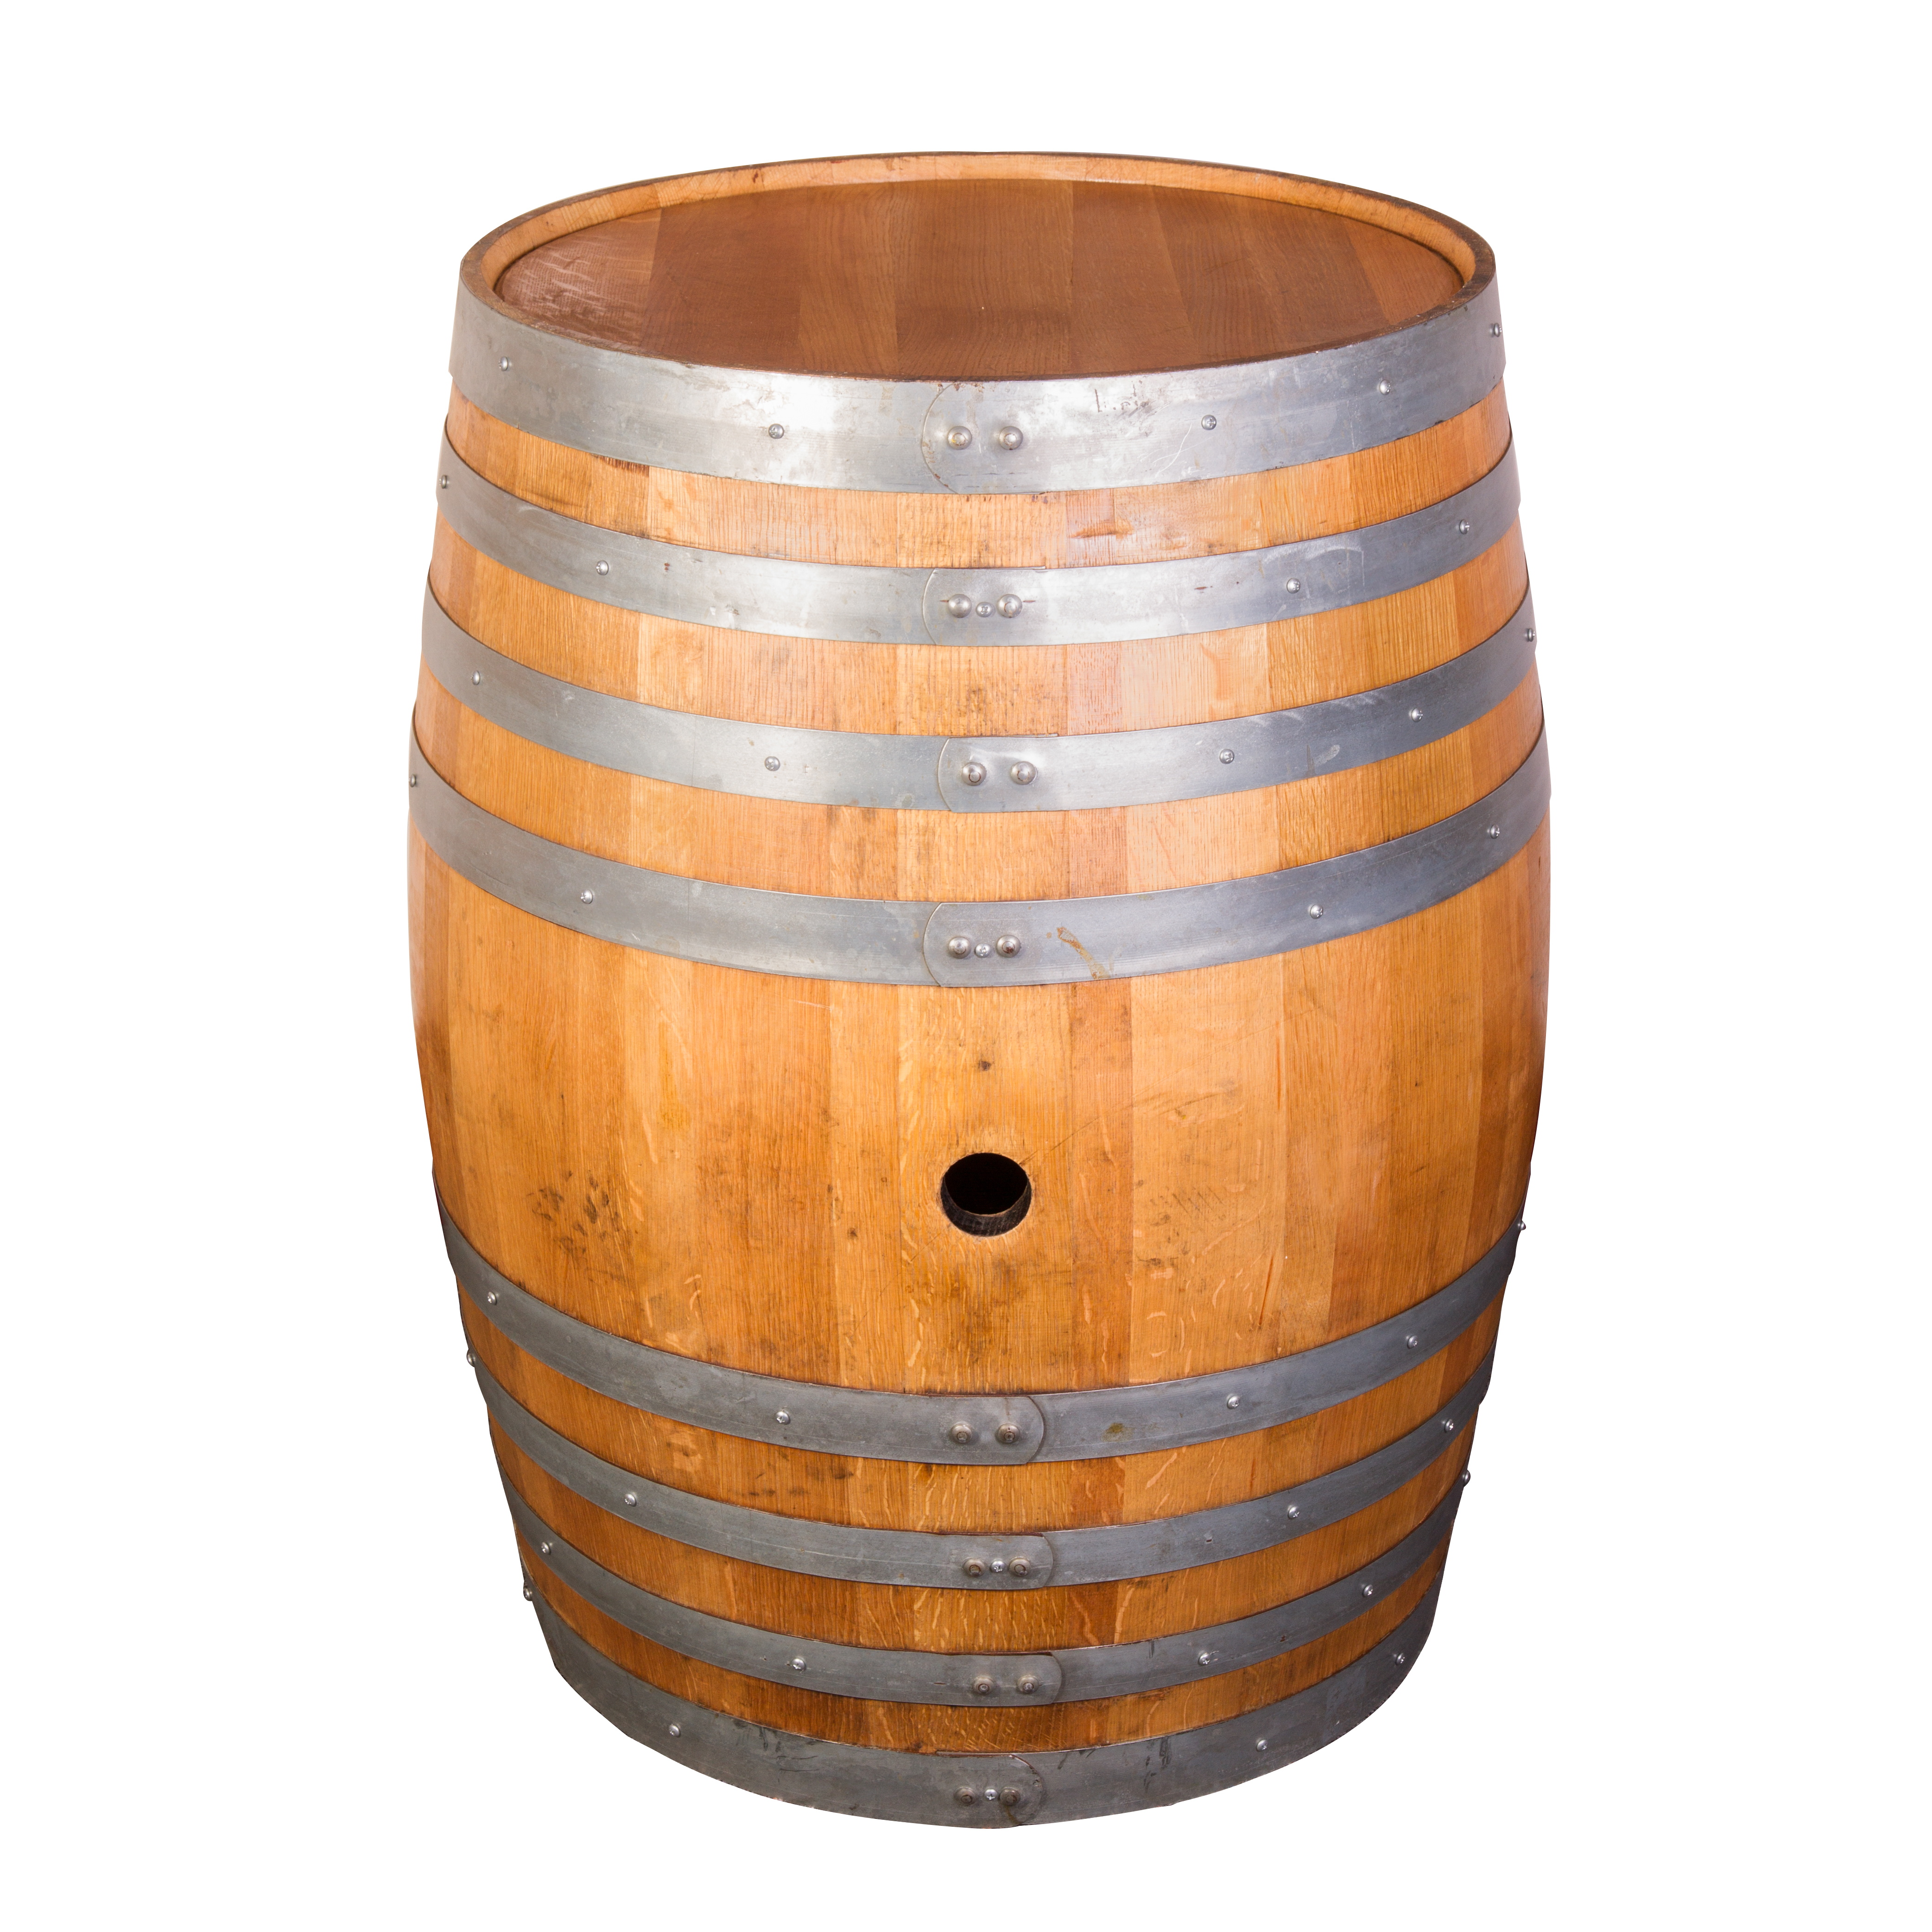 Barrel #13